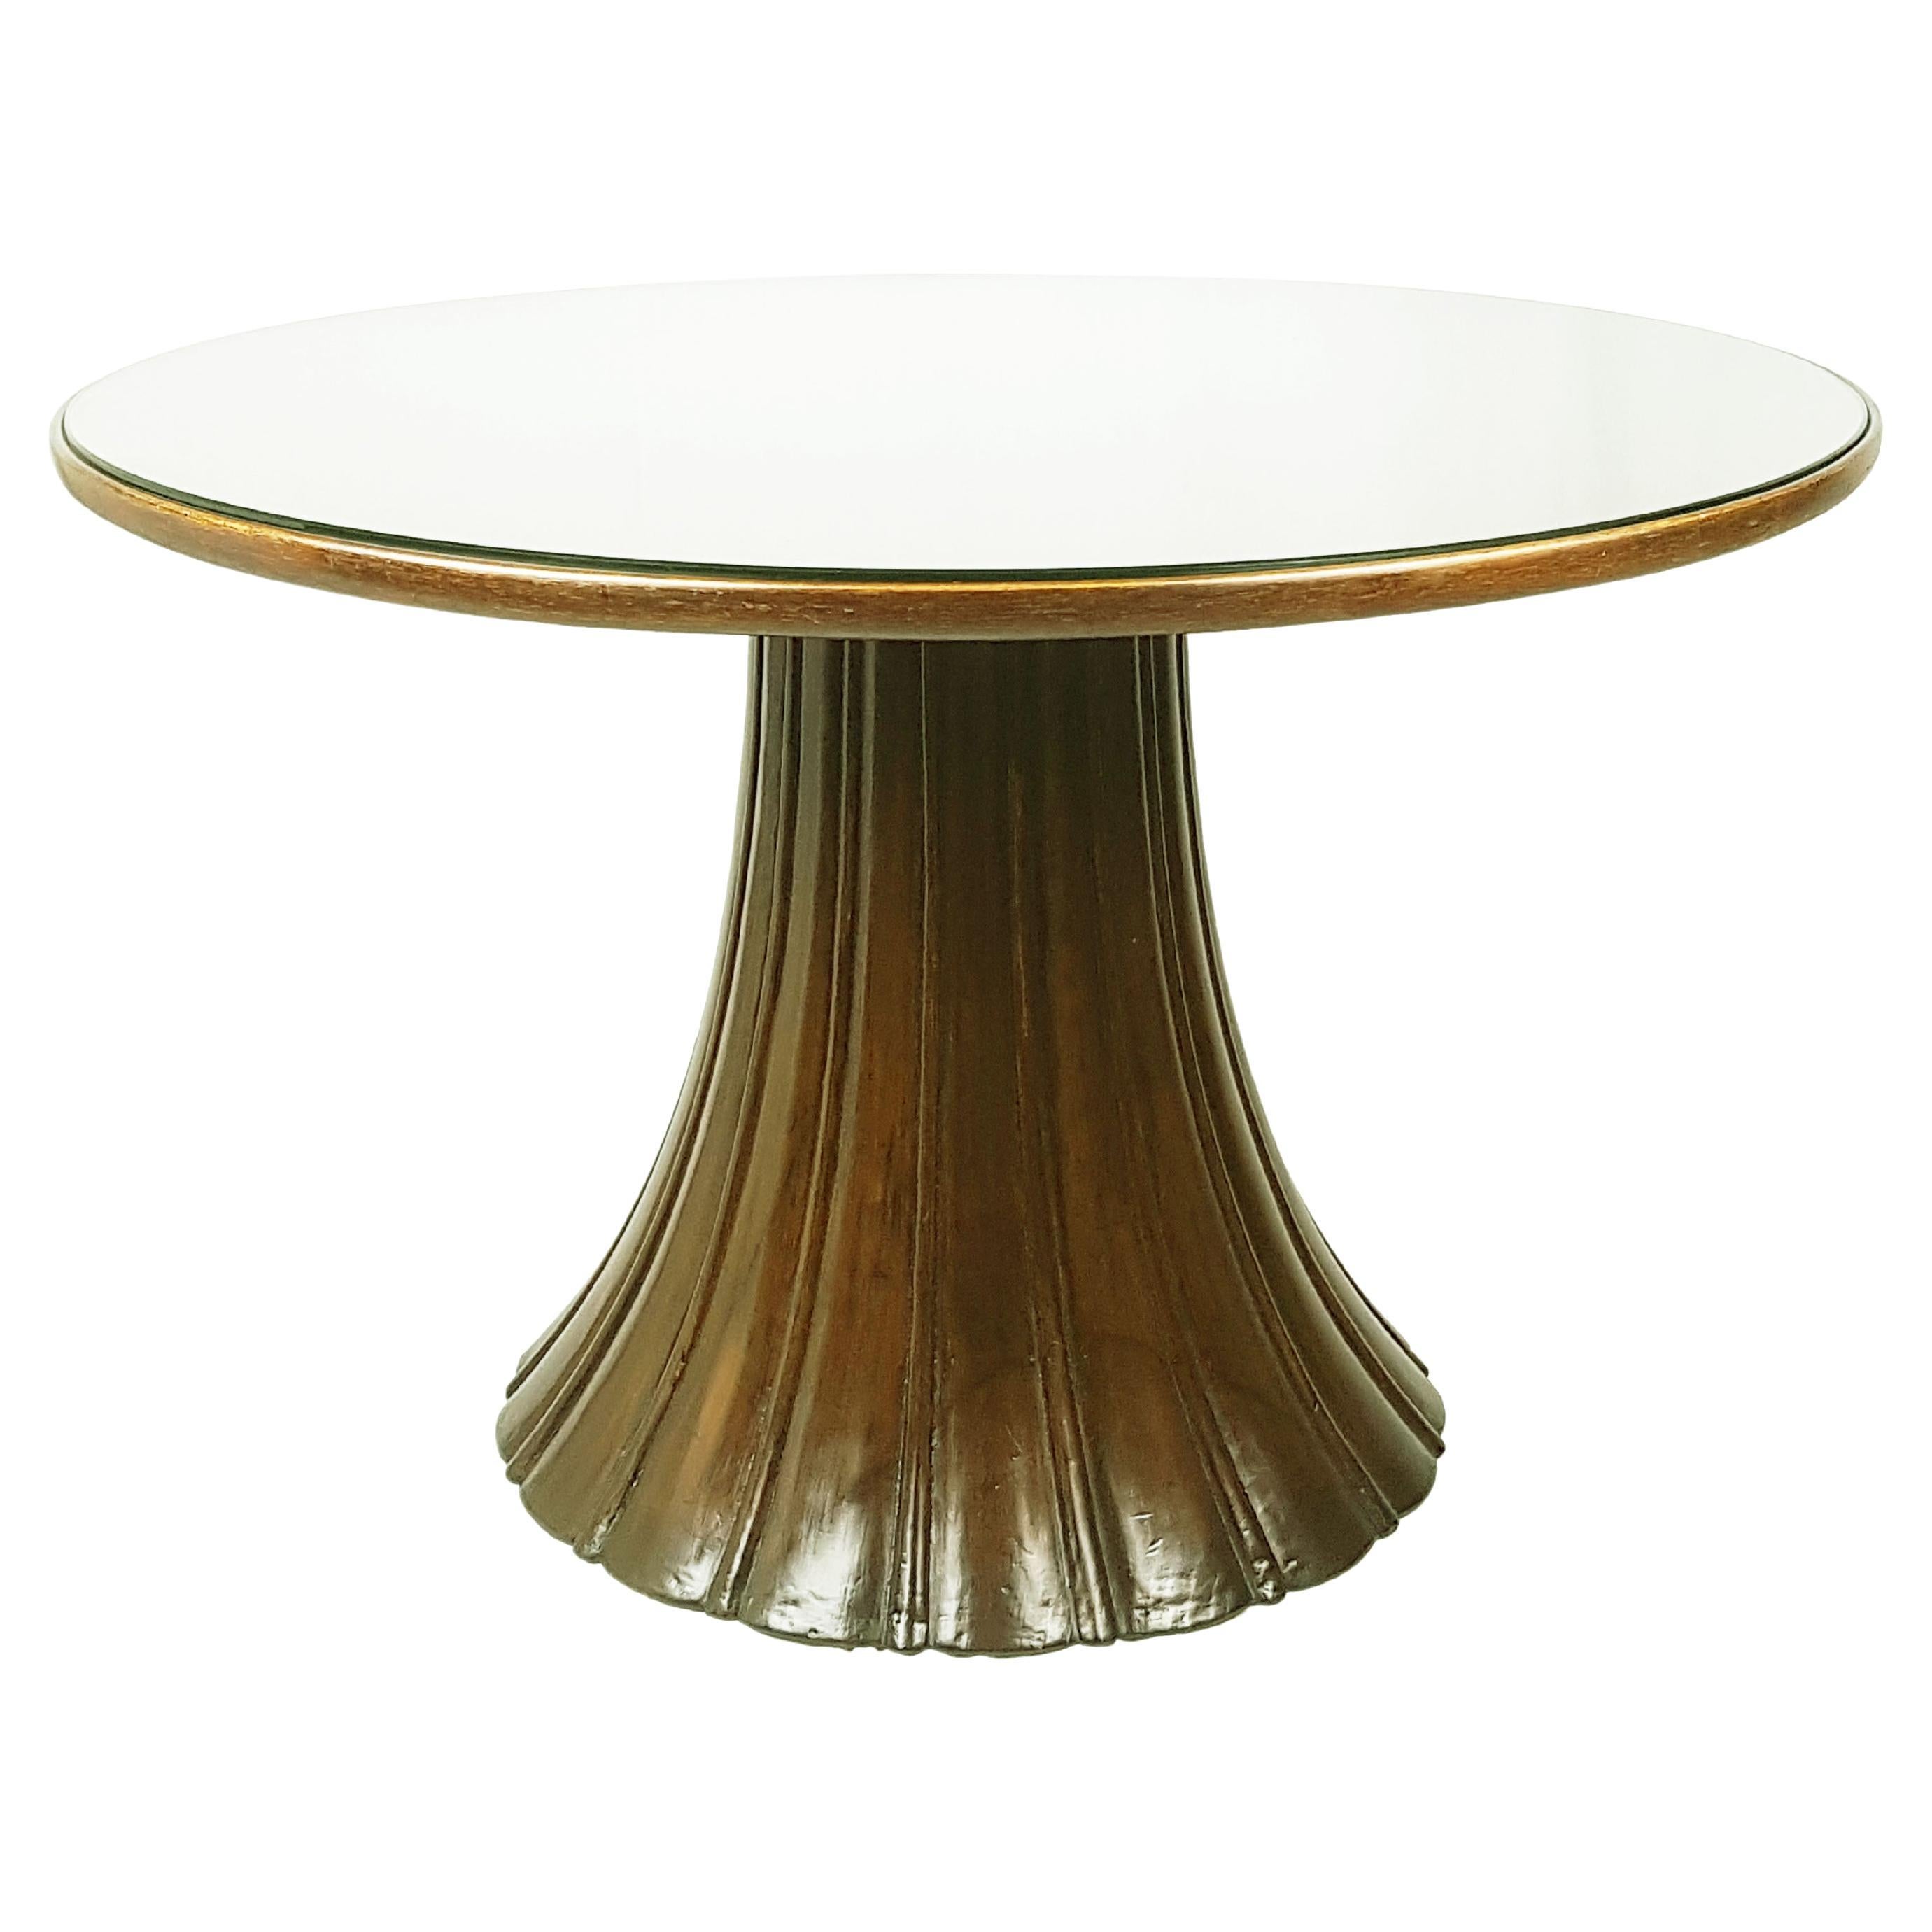 Grande table basse en bois teinté et verre des années 1930-1940 attribuée à Guglielmo Ulrich en vente